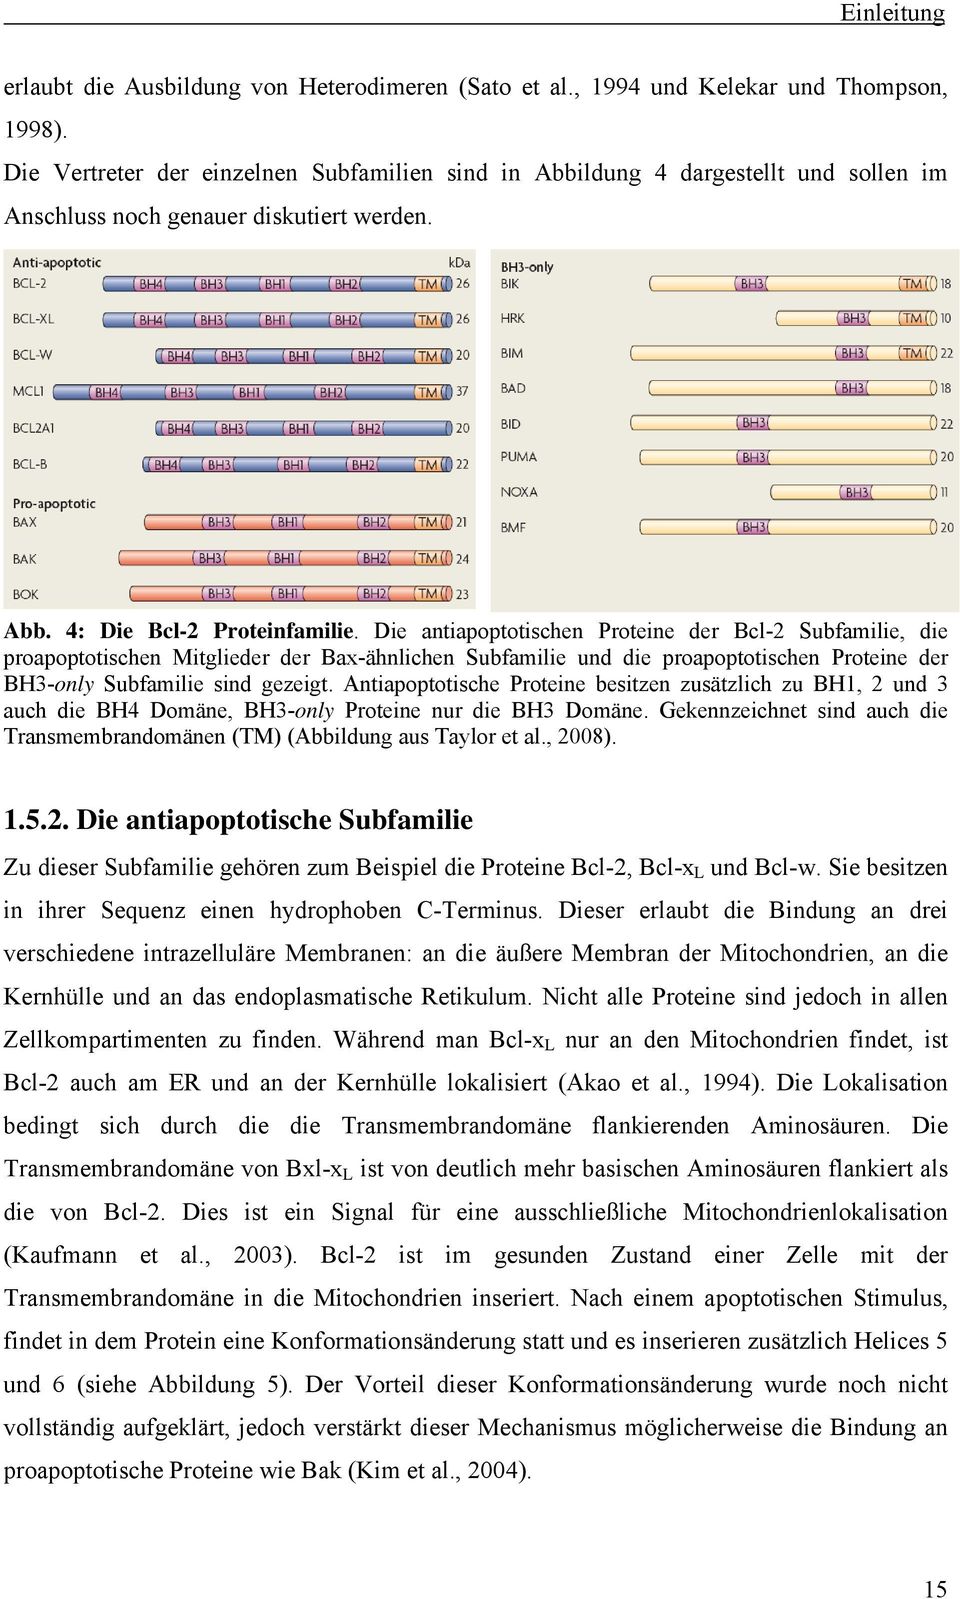 Die antiapoptotischen Proteine der Bcl-2 Subfamilie, die proapoptotischen Mitglieder der Bax-ähnlichen Subfamilie und die proapoptotischen Proteine der BH3-only Subfamilie sind gezeigt.